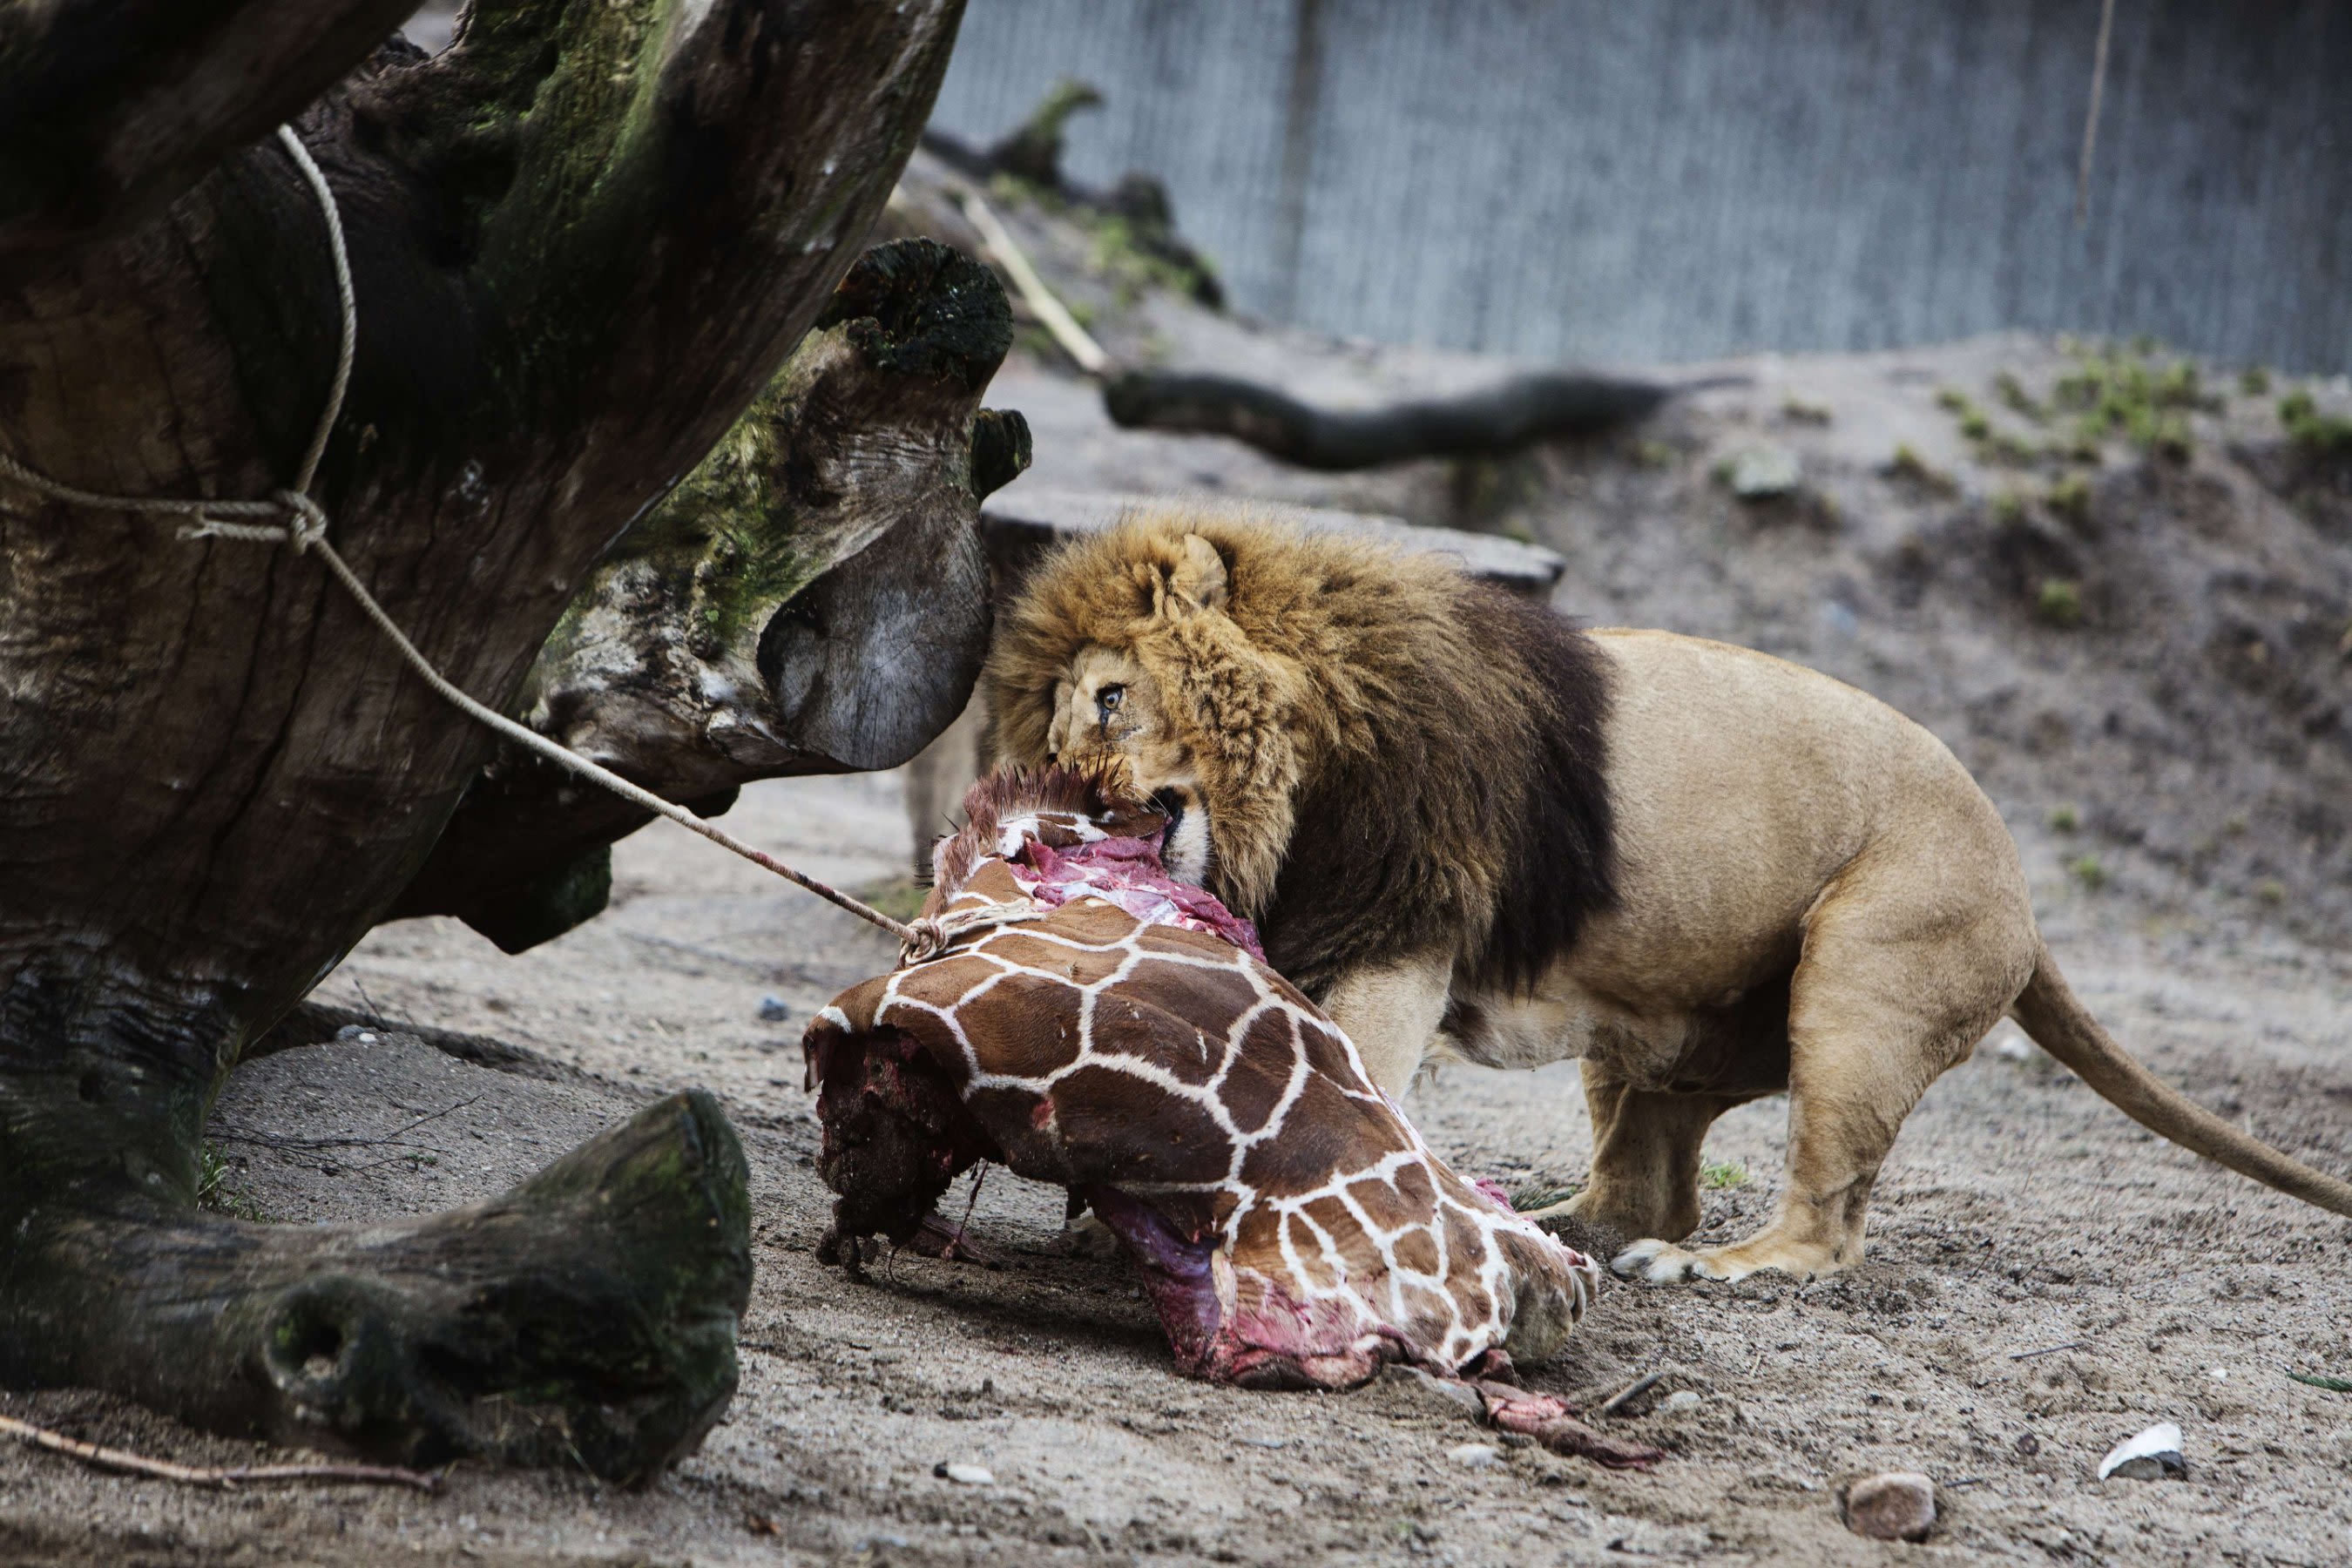 Copenhagen Zoo kills 4 lions, weeks after shooting giraffe | CNN